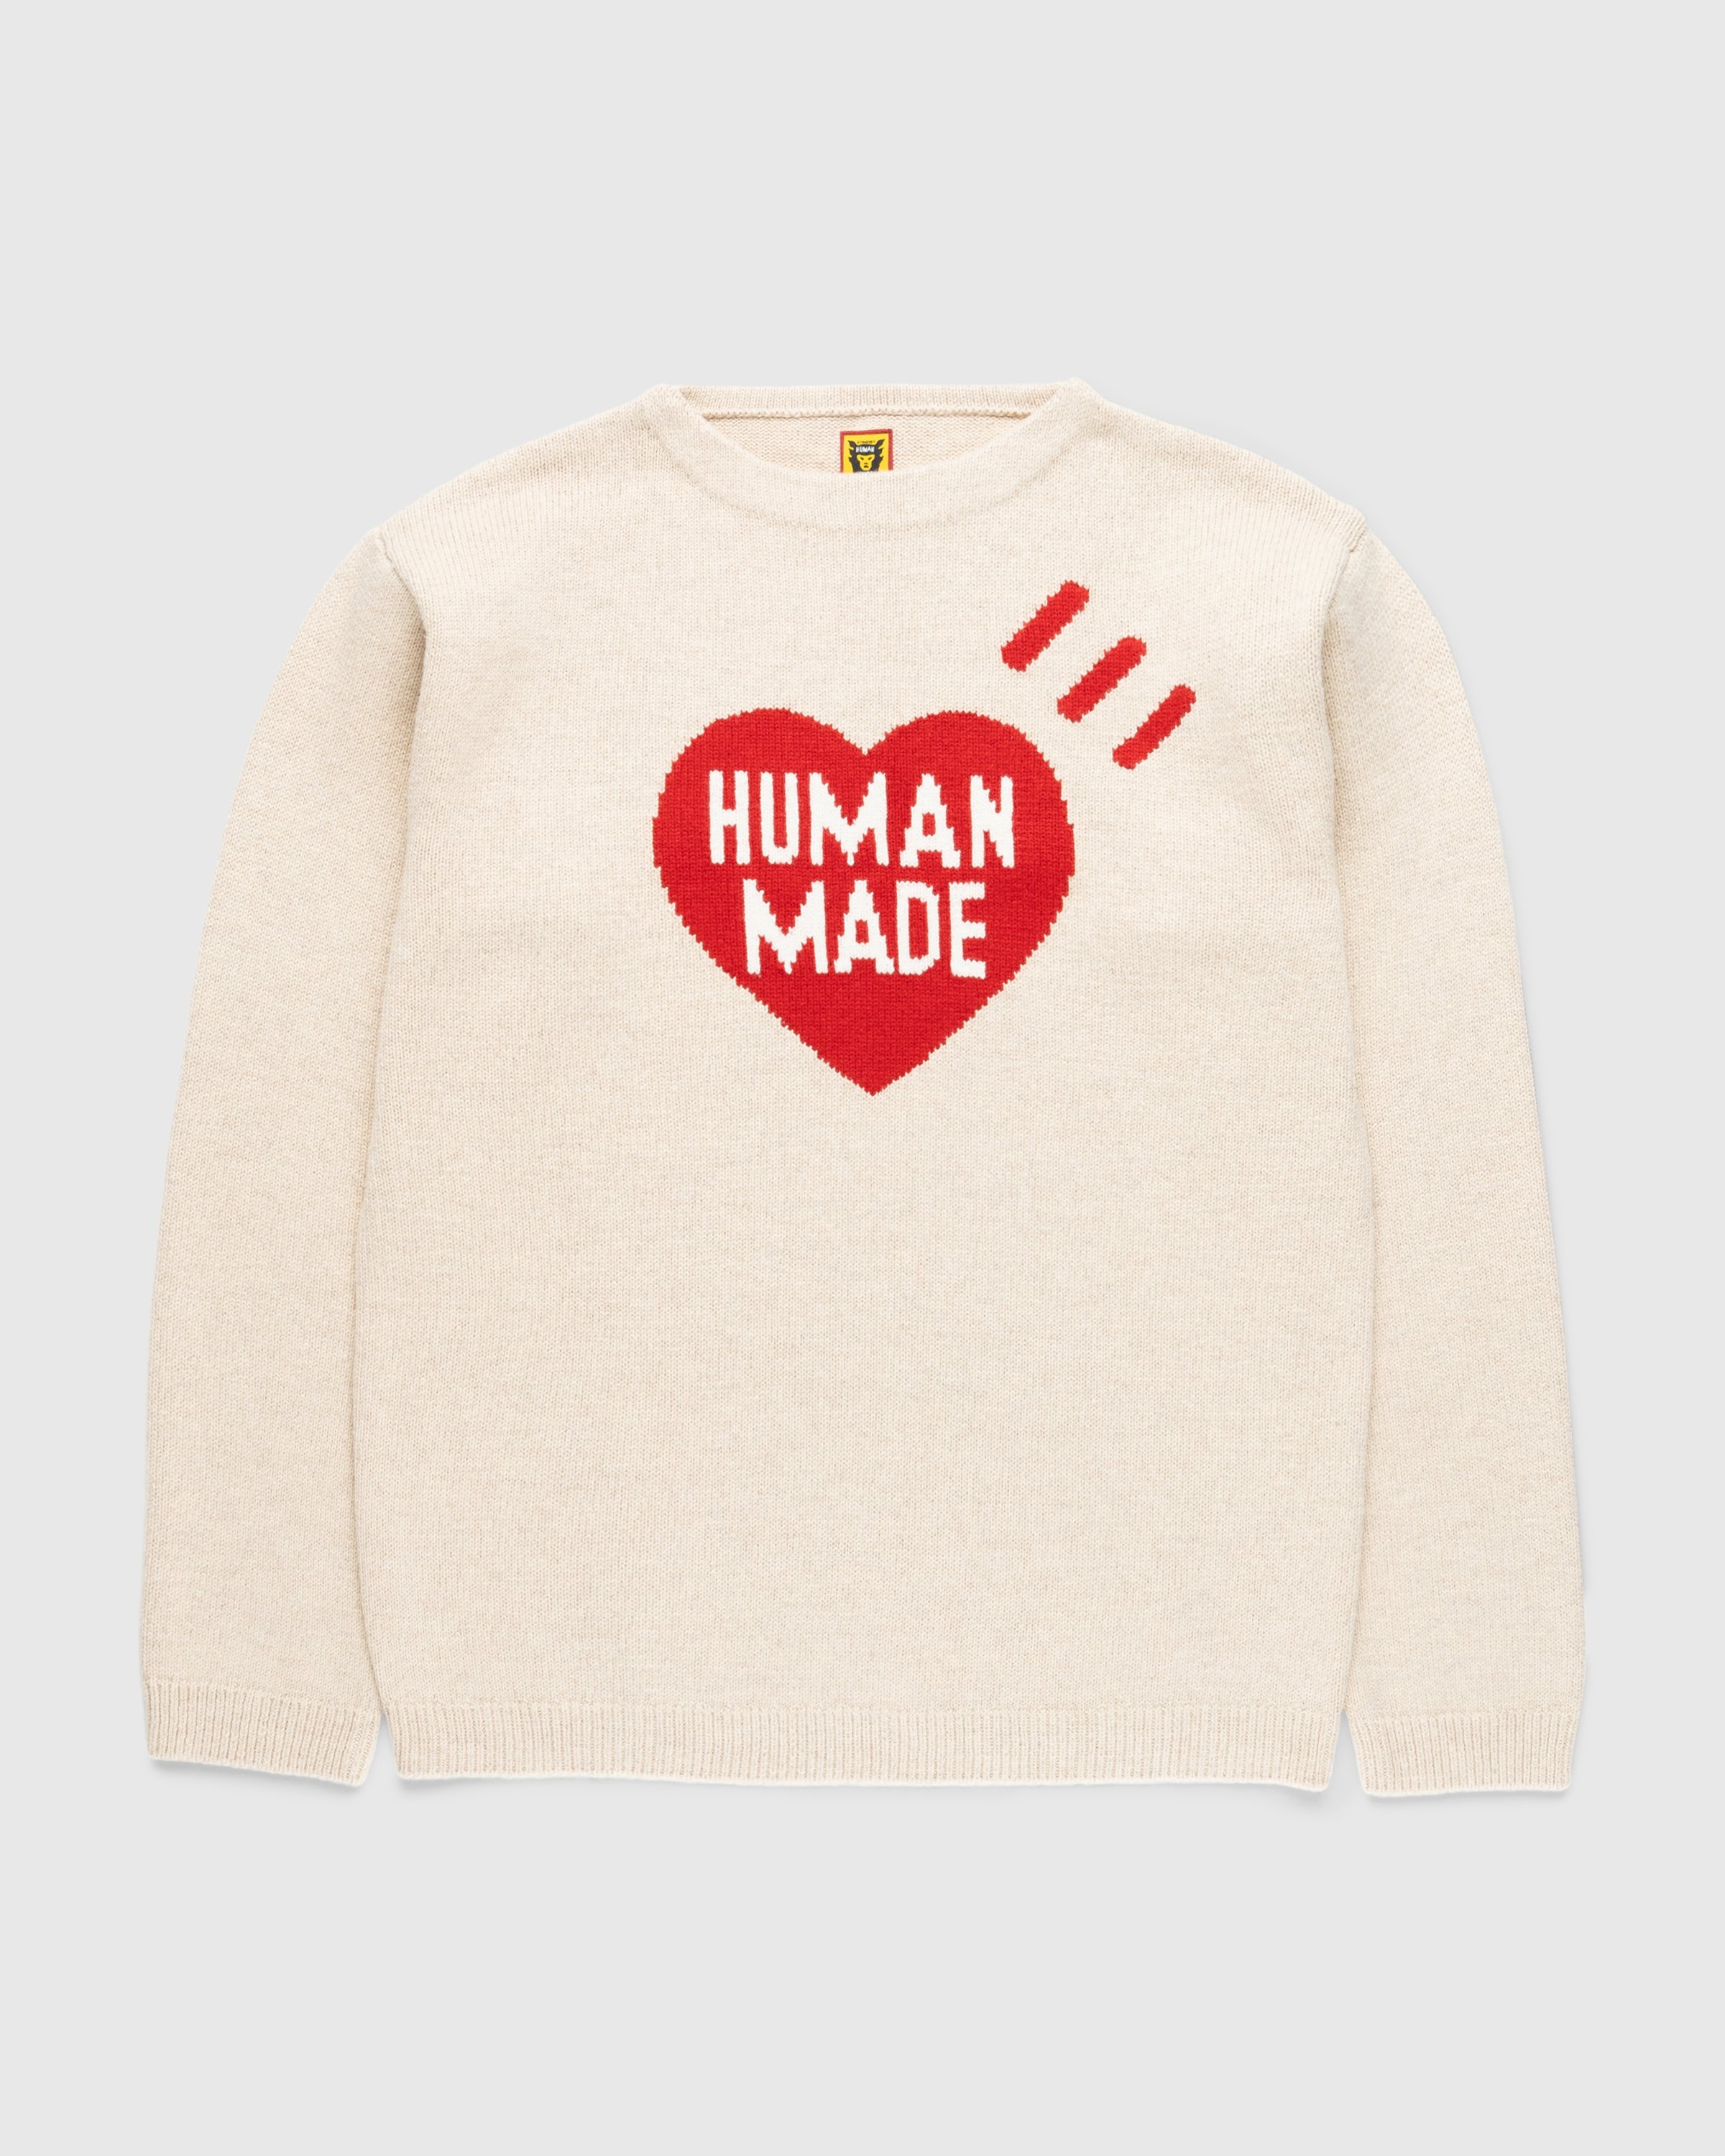 HUMAN MADE HEART L/S KNIT SWEATER XL - ニット/セーター